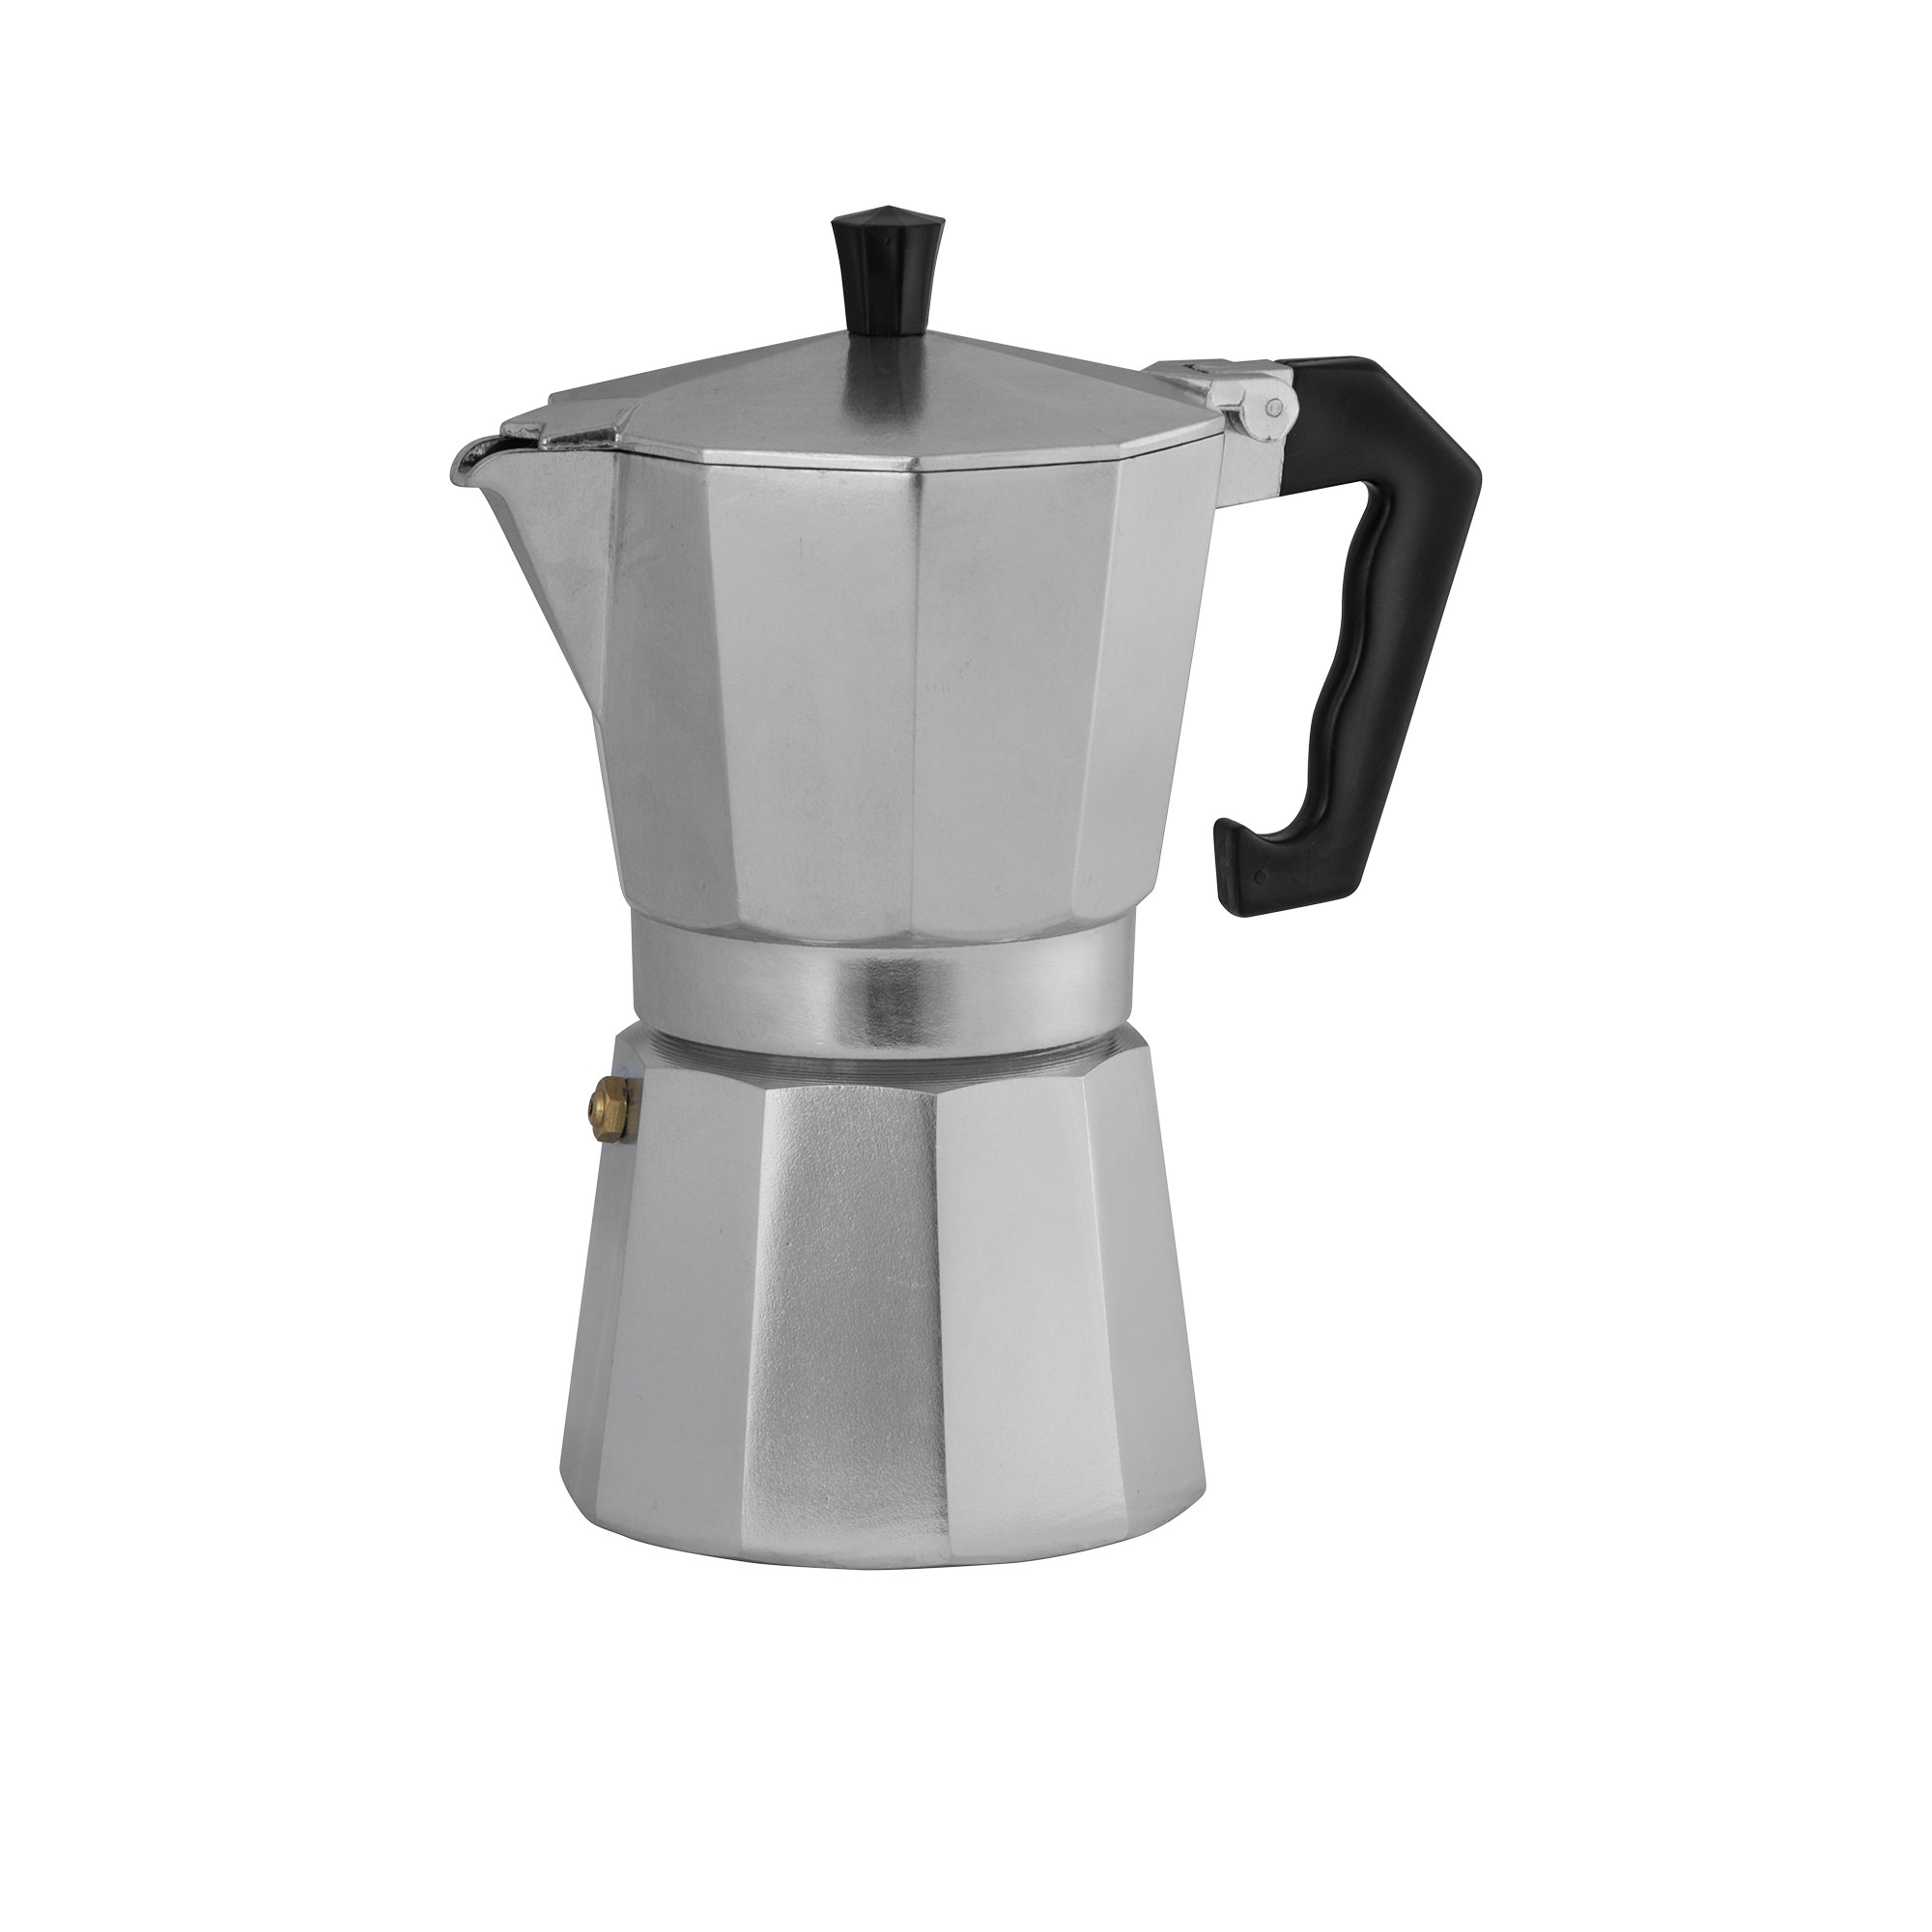 Avanti ClassicPro Espresso Coffee Maker 6 Cup Image 1